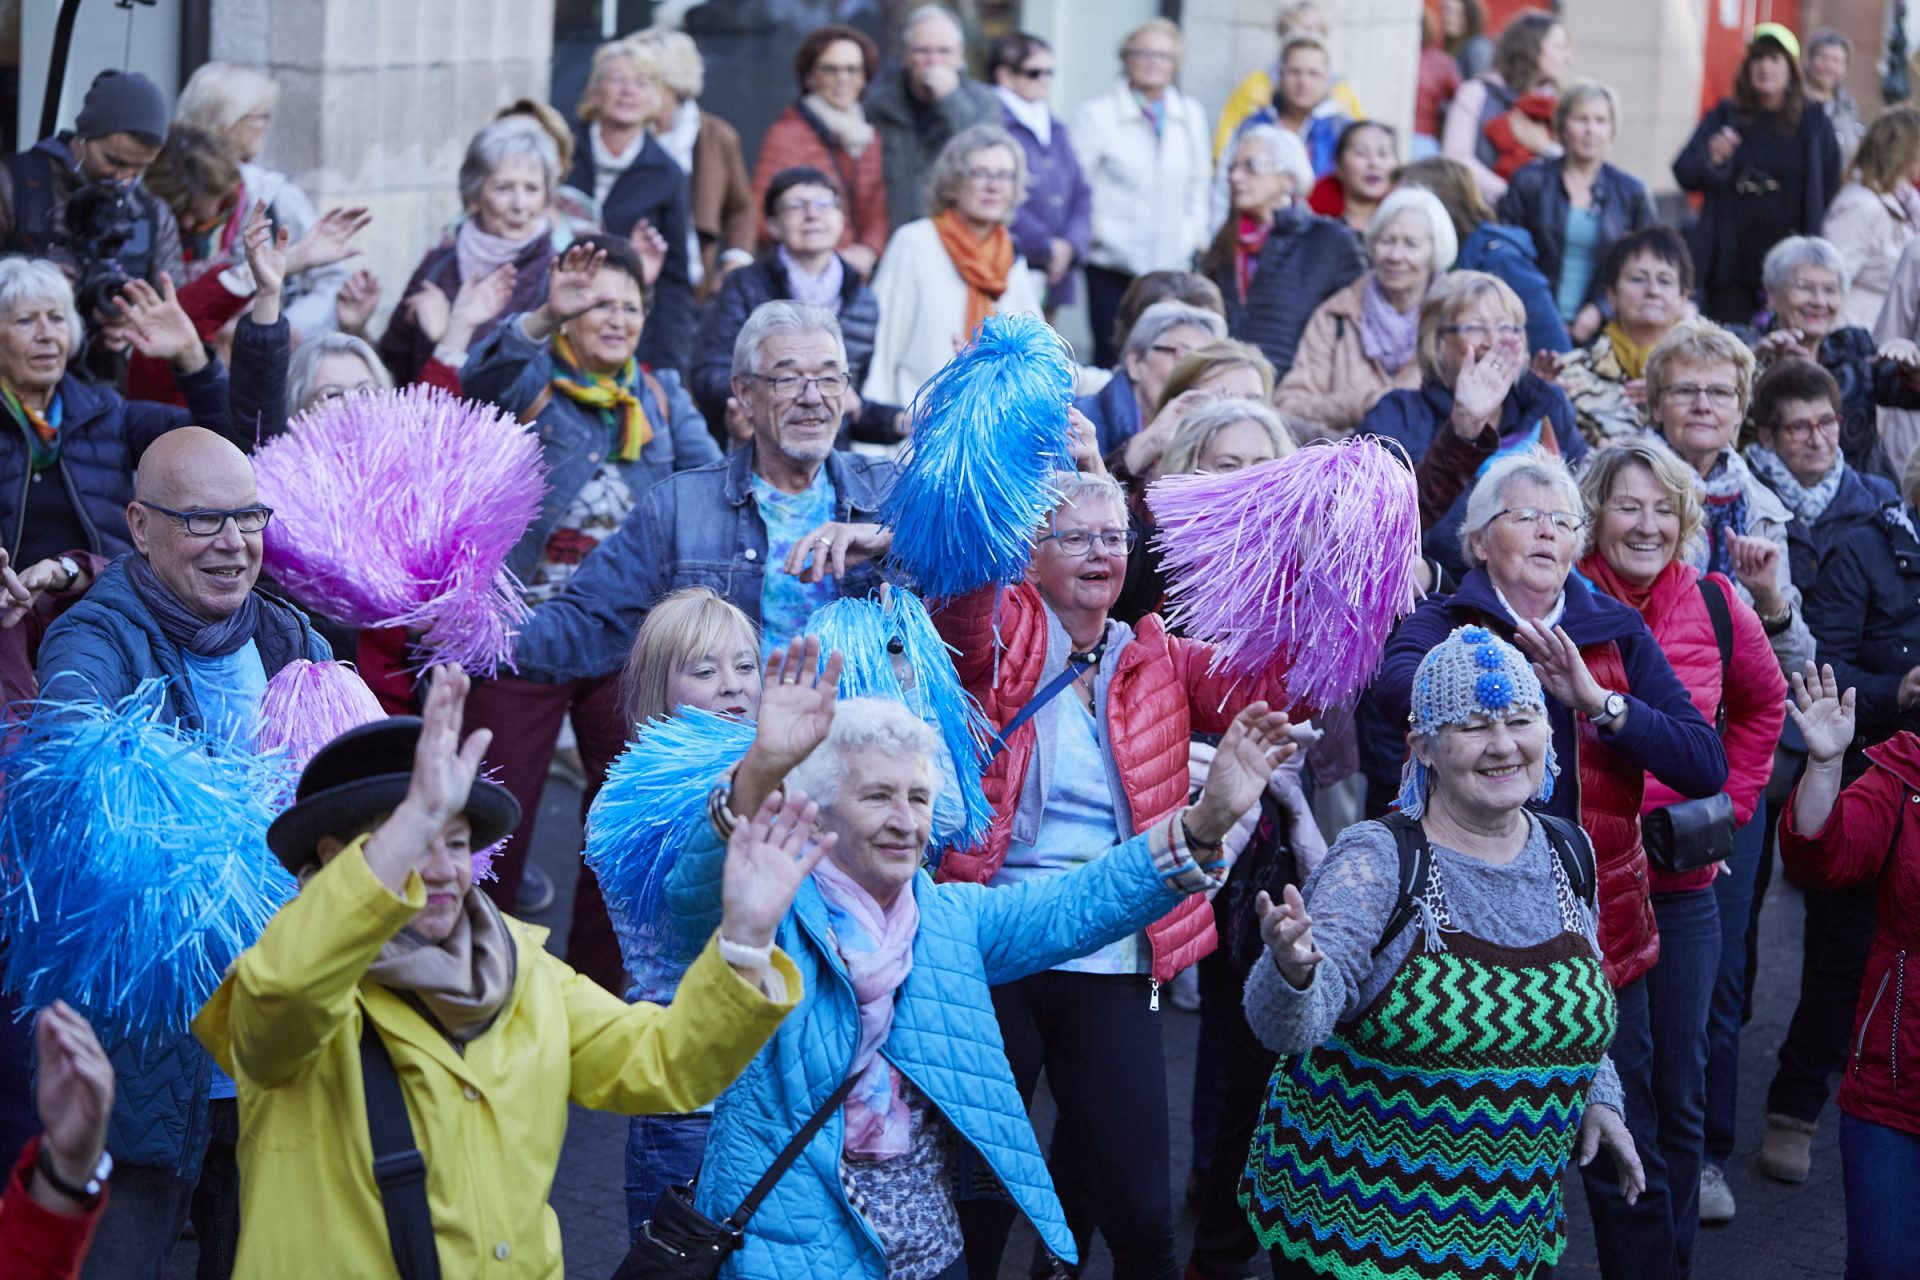 Bunt, bunt und nochmals bunt war es beim diesjährigen Seniorenflashmob auf dem Heinrich-Heine-Platz in Düsseldorf. Bildquelle: © Bine Bellmann